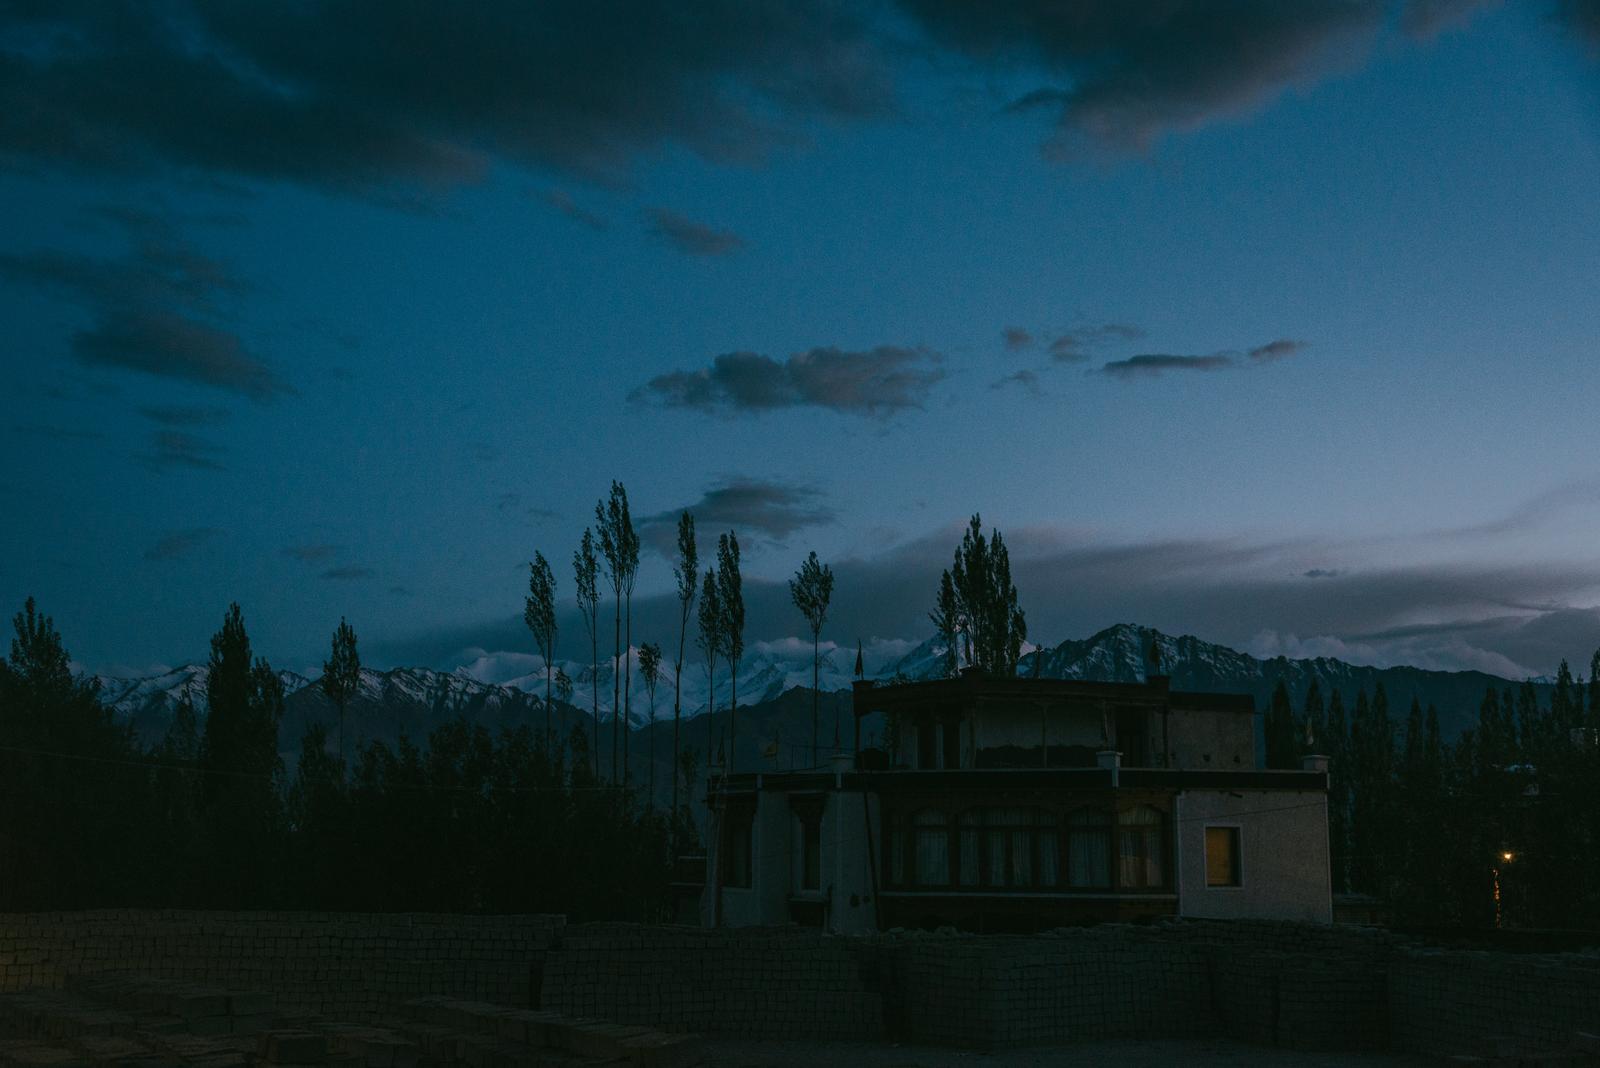 A Night Landscape in Leh